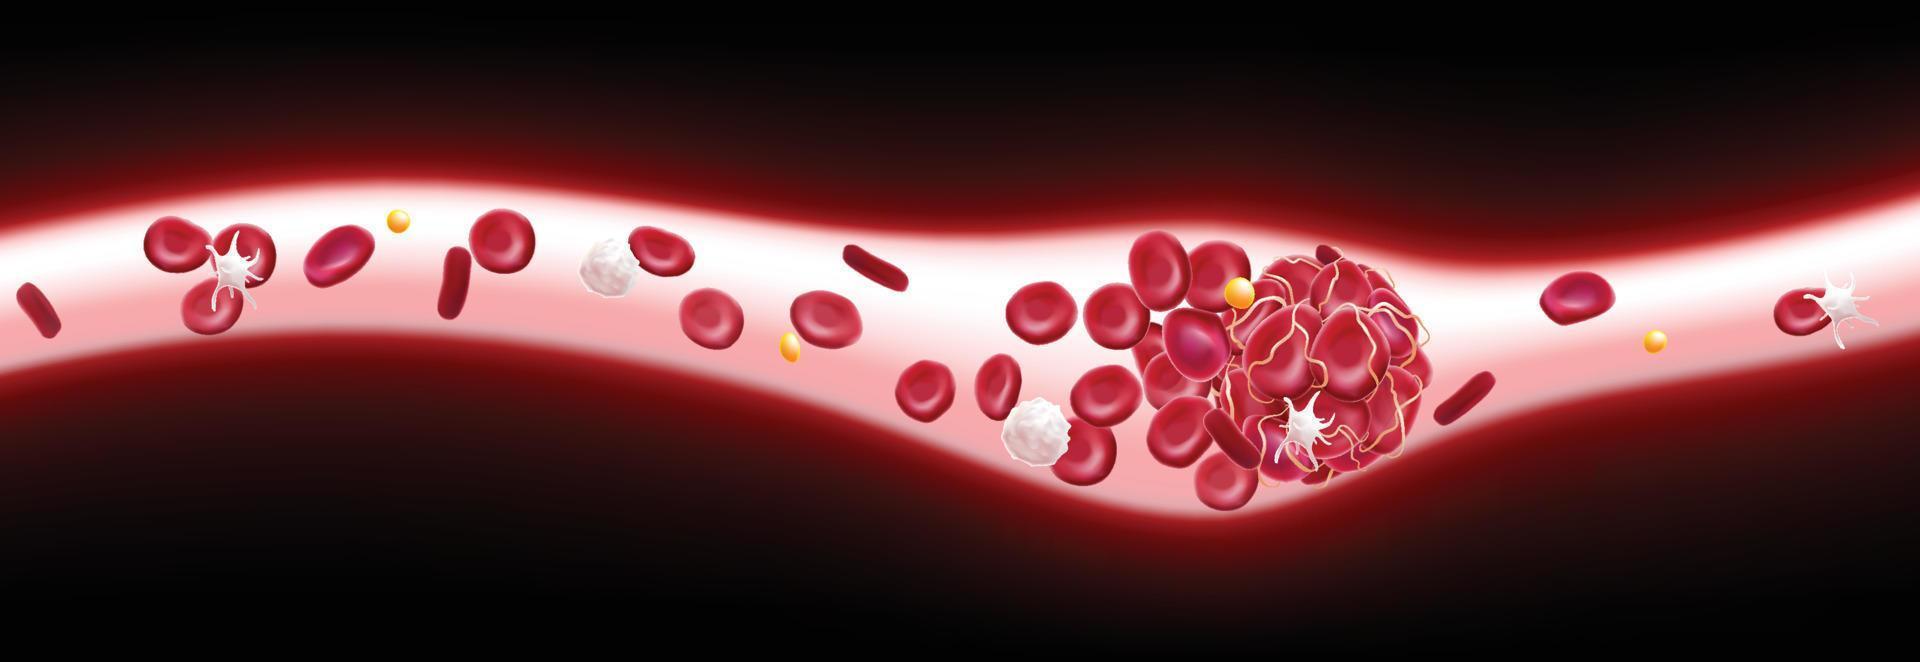 Ilustração 3D de um coágulo de sangue em um vaso sanguíneo mostrando um fluxo sanguíneo bloqueado com plaquetas e glóbulos brancos na imagem. vetor